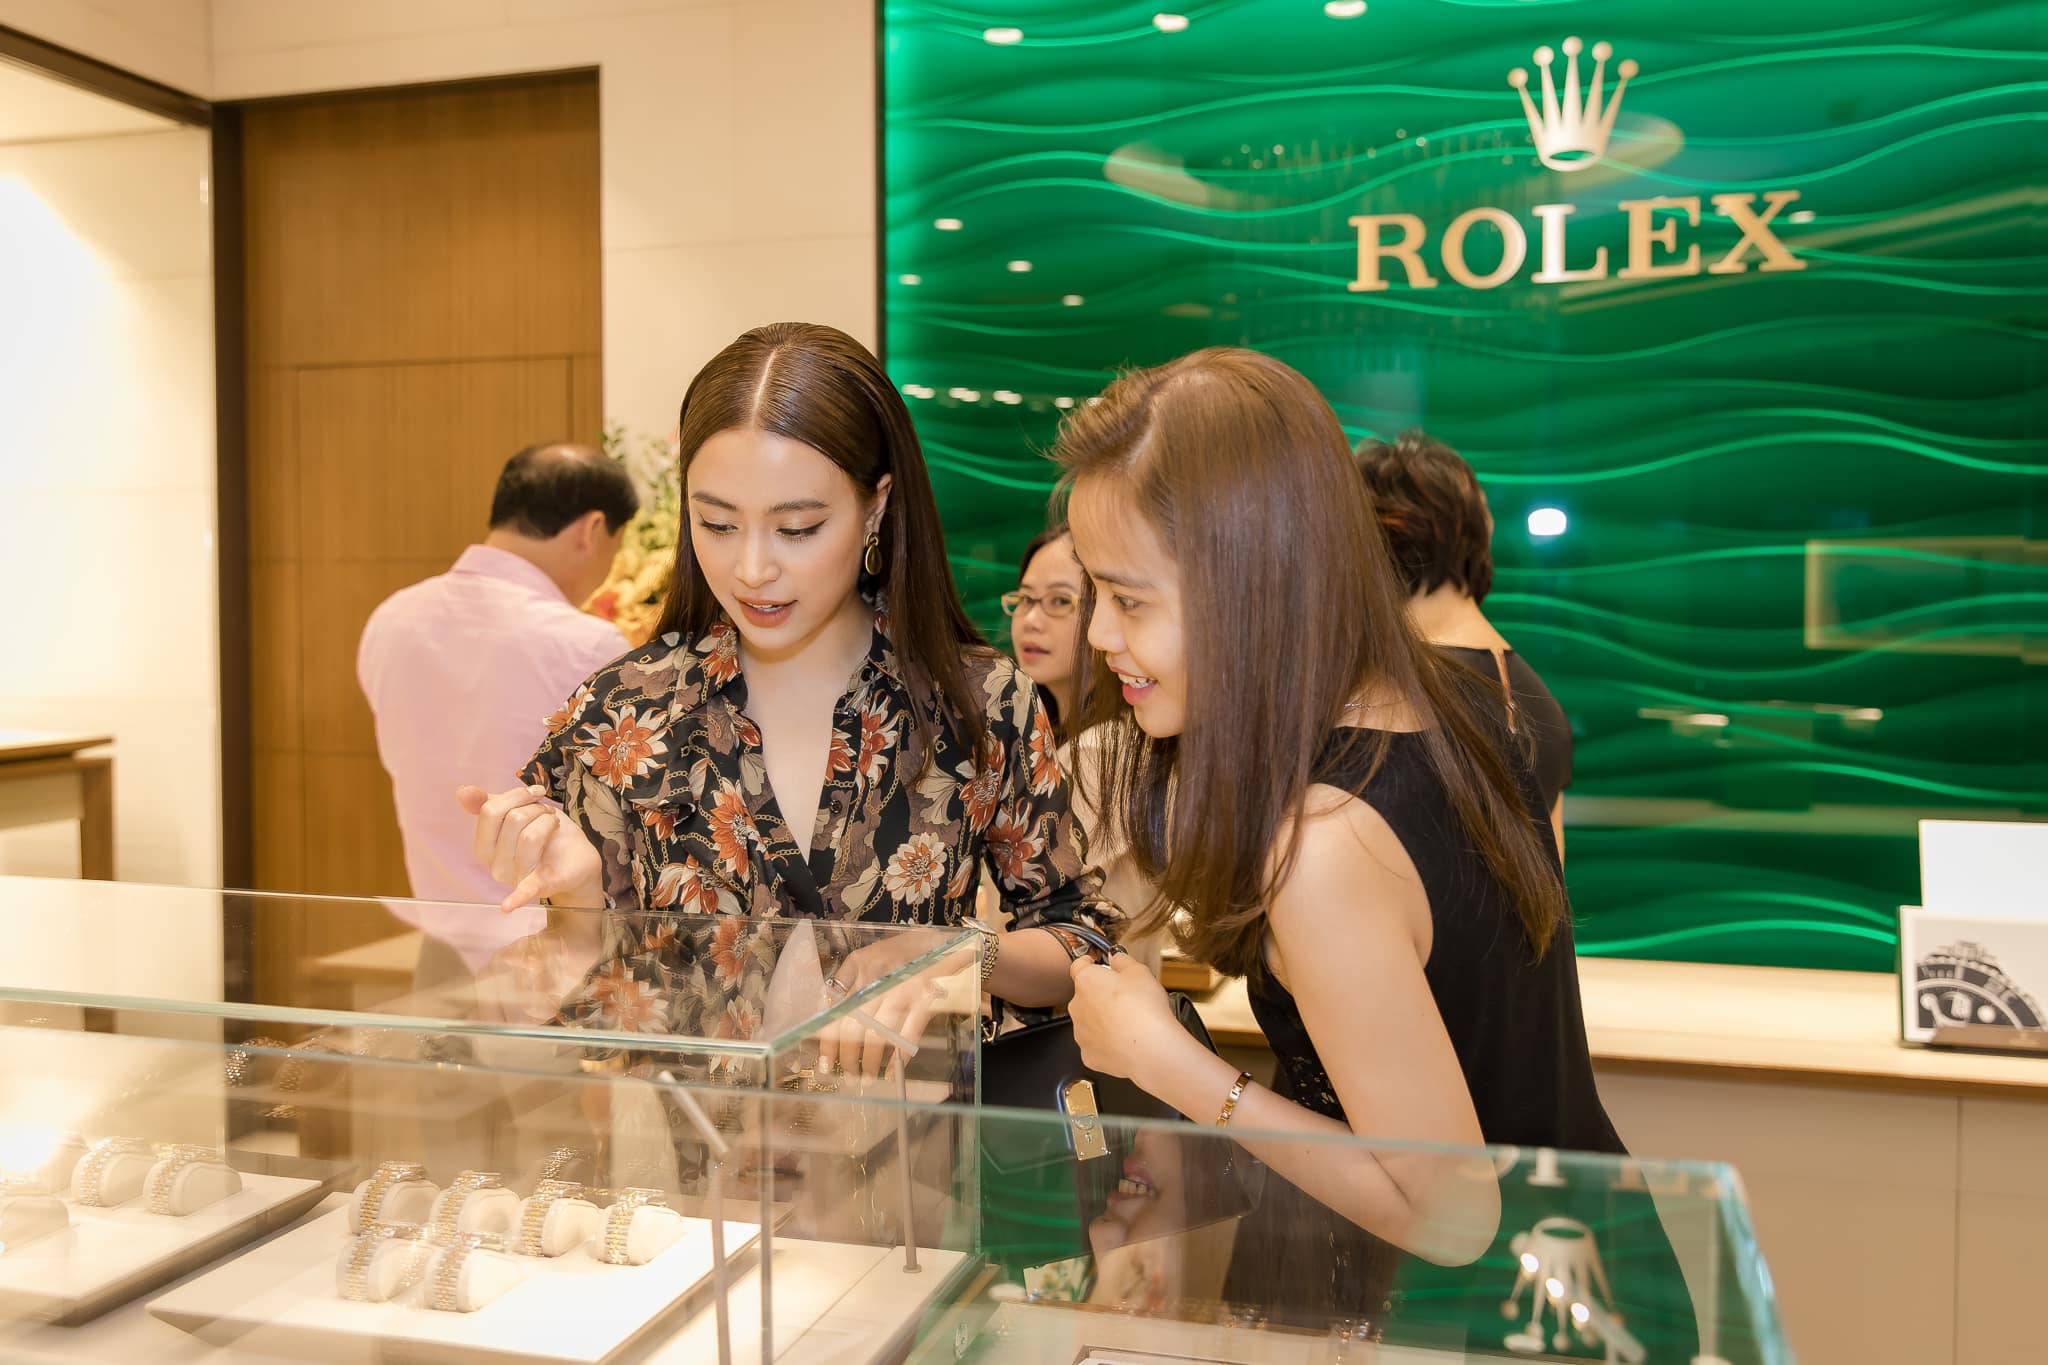 “Mị” Hoàng Thuỳ Linh khoe nhan sắc hơn người cùng set đồ hiệu dự khai trương cửa hàng Rolex